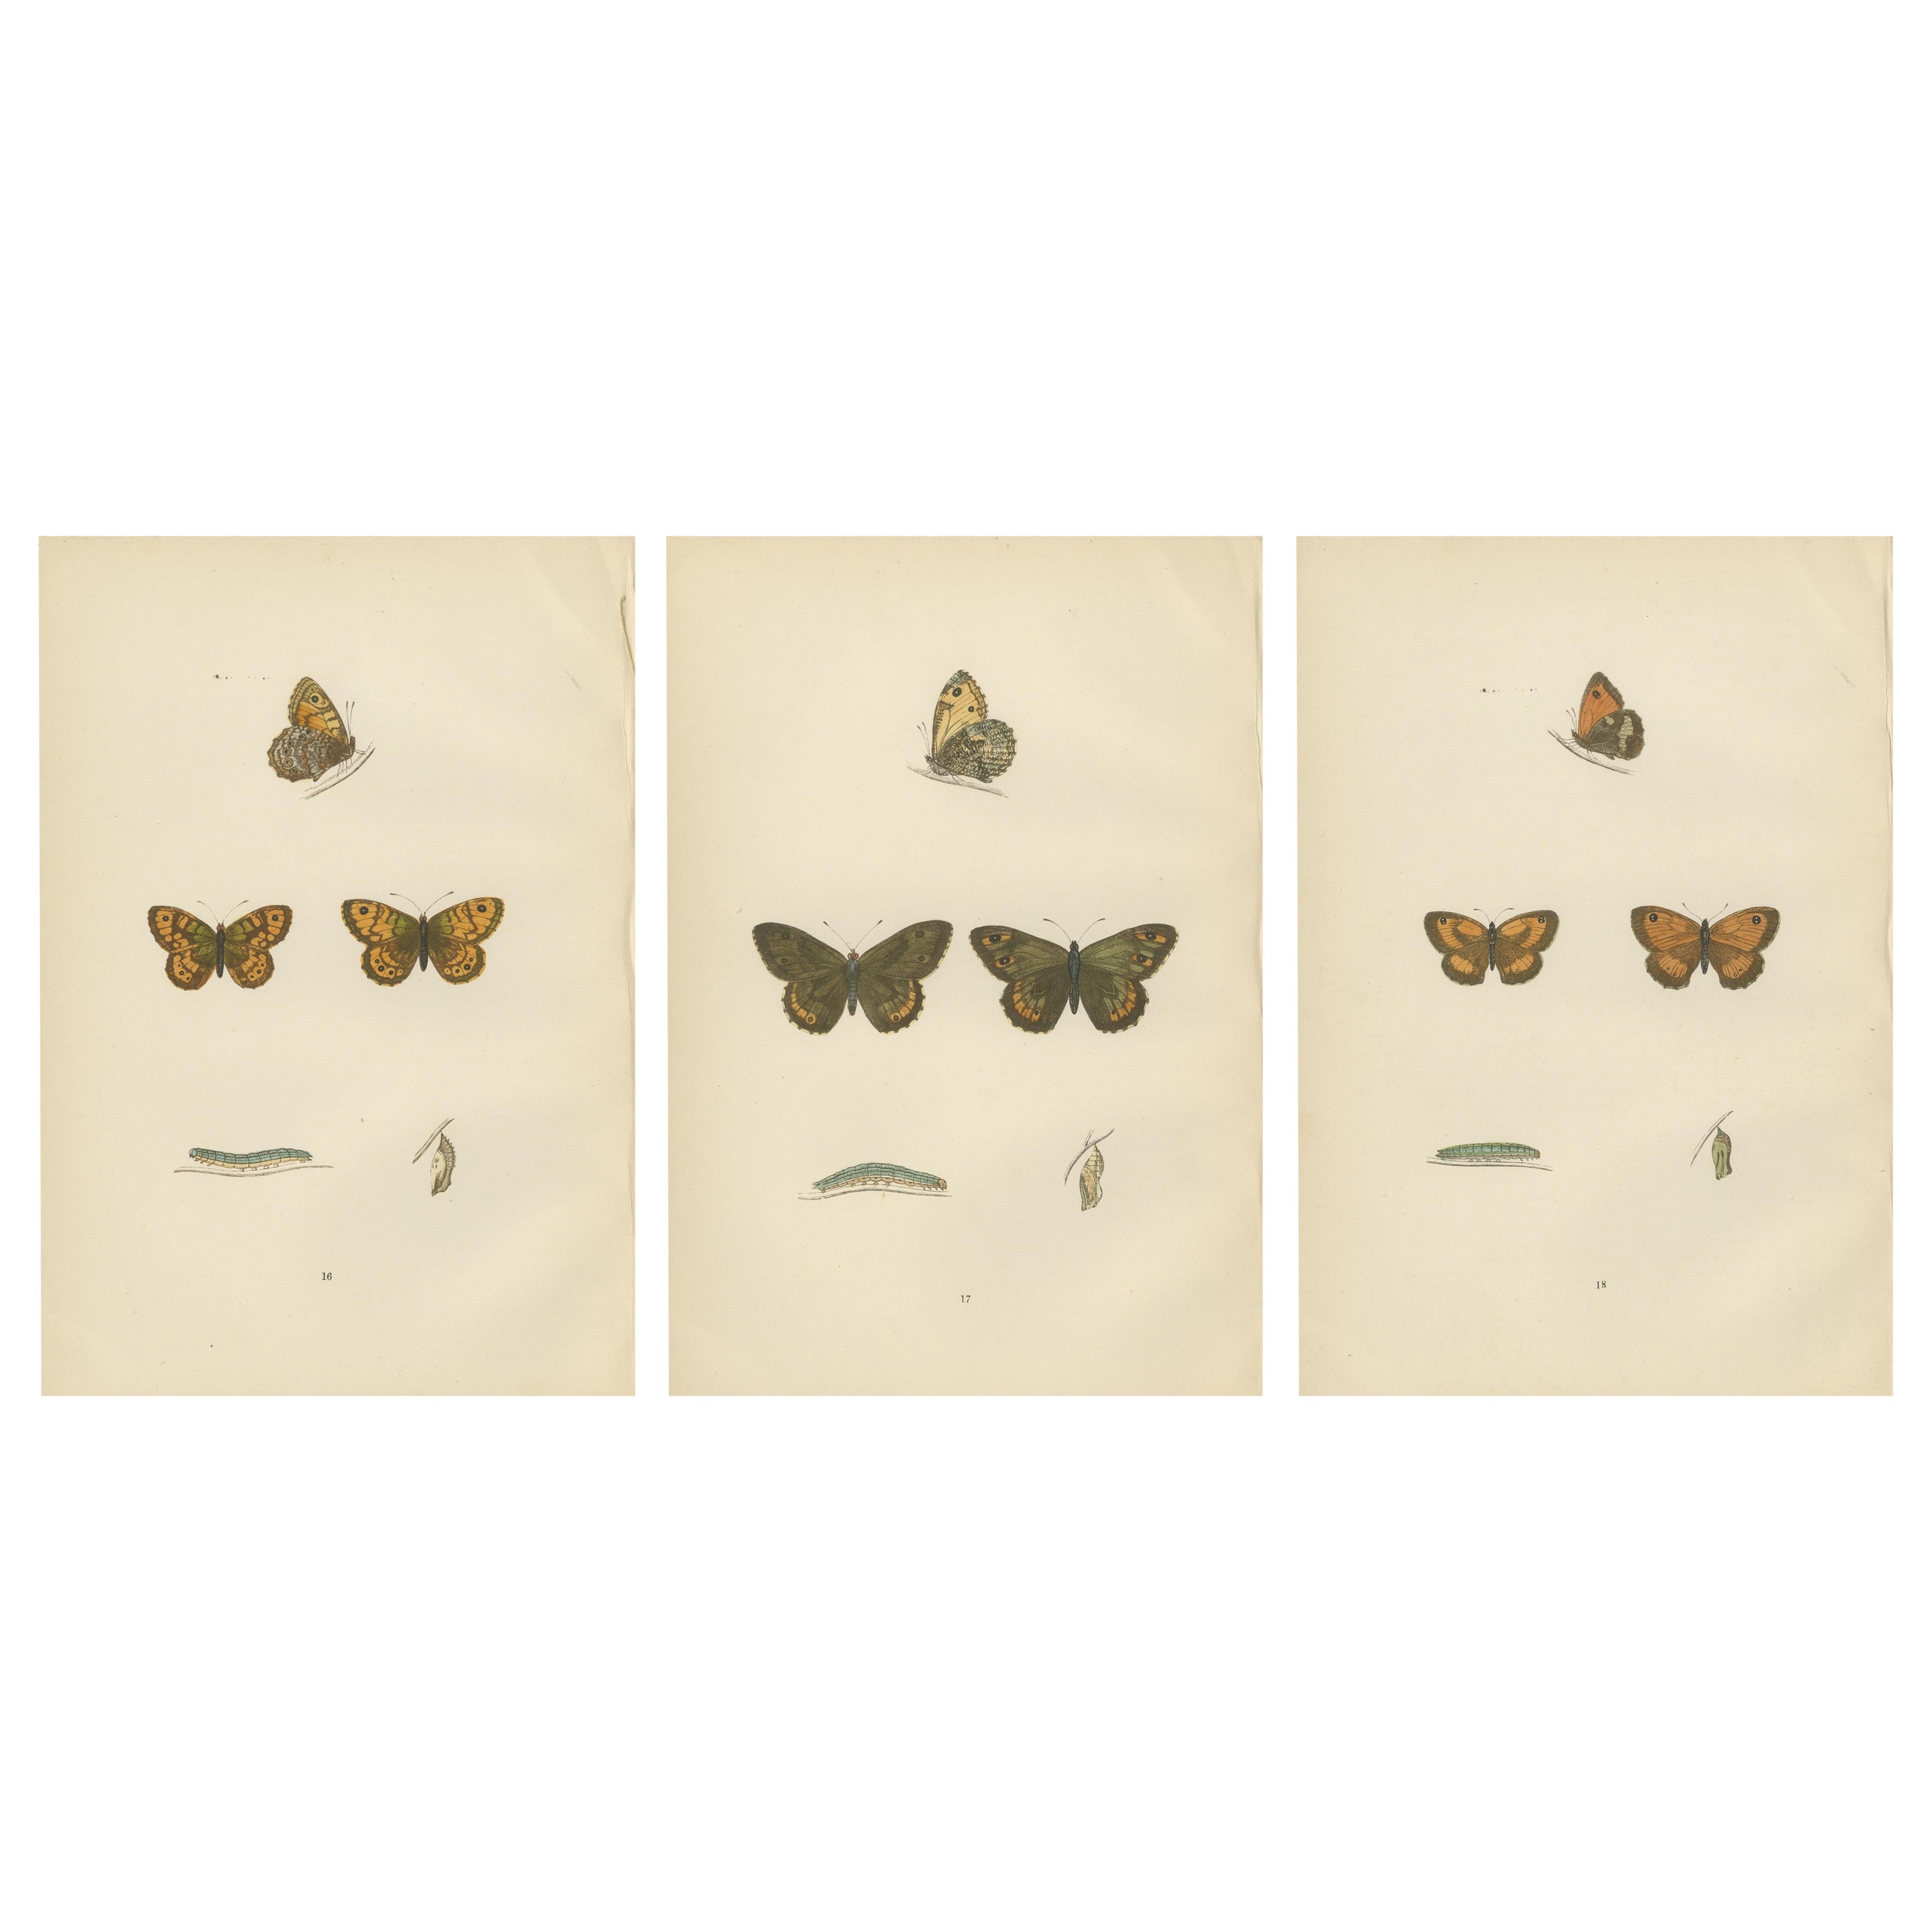 Montage sur la Metamorphosis : Le cycle de vie des lépidoptères, 1890